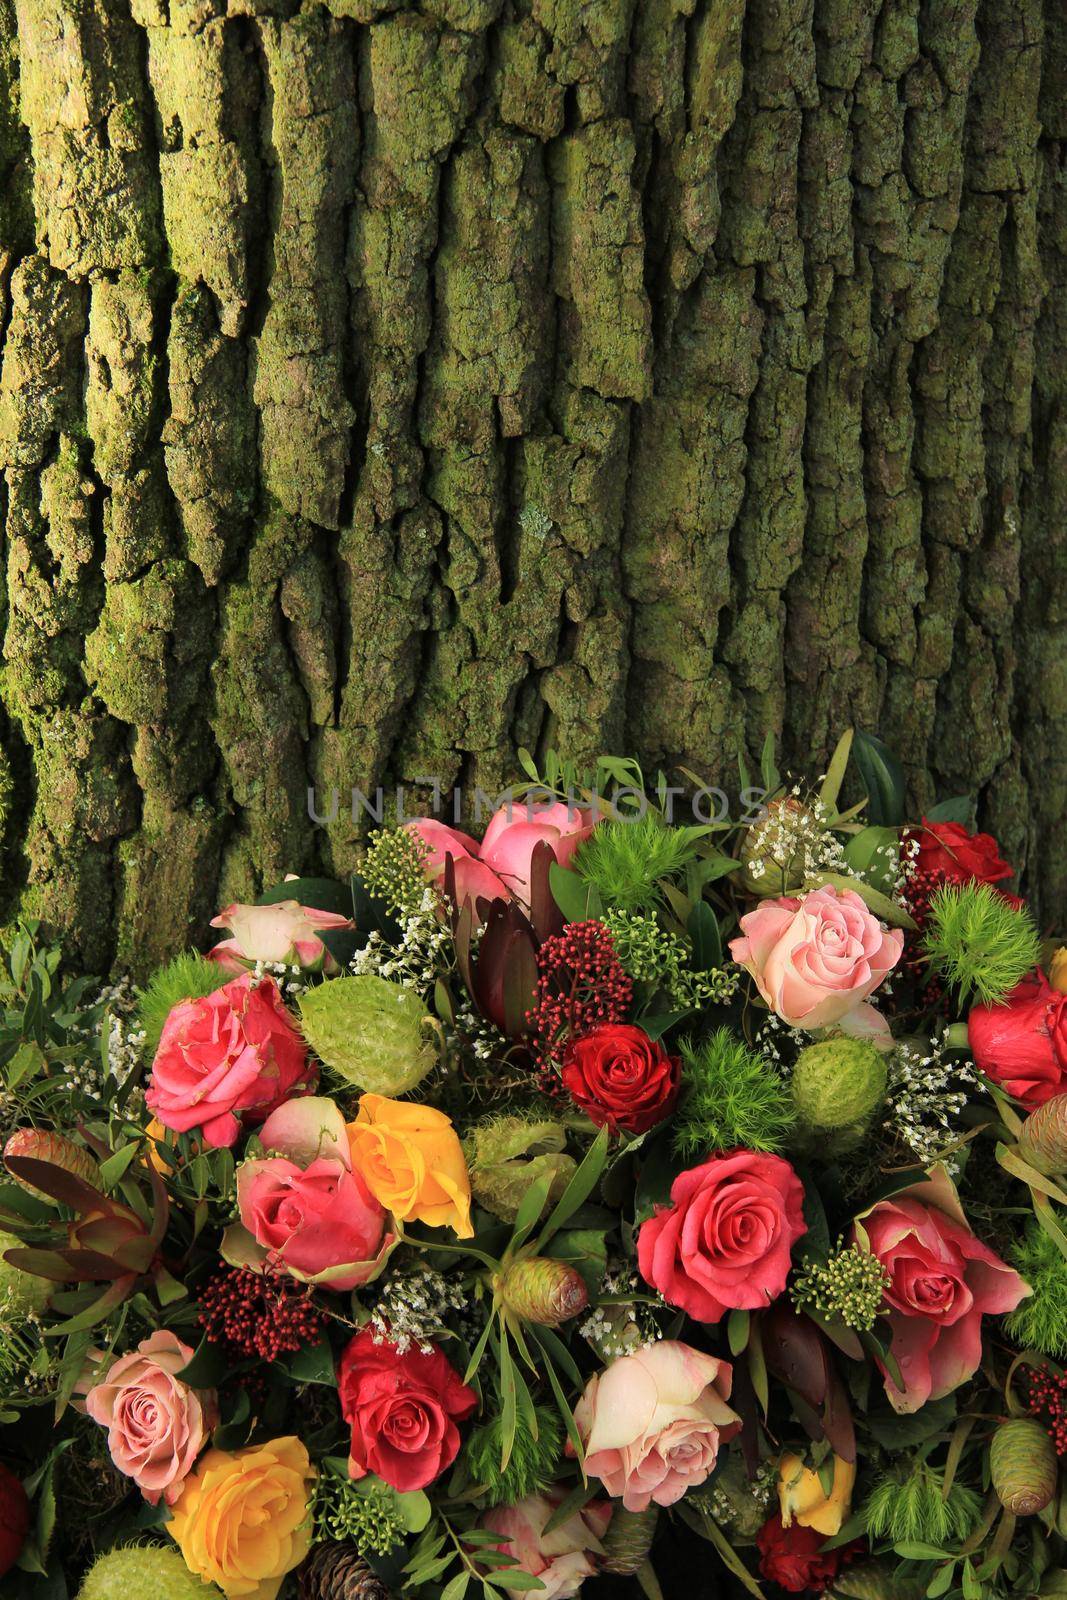 A floral sympathy wreath near a tree